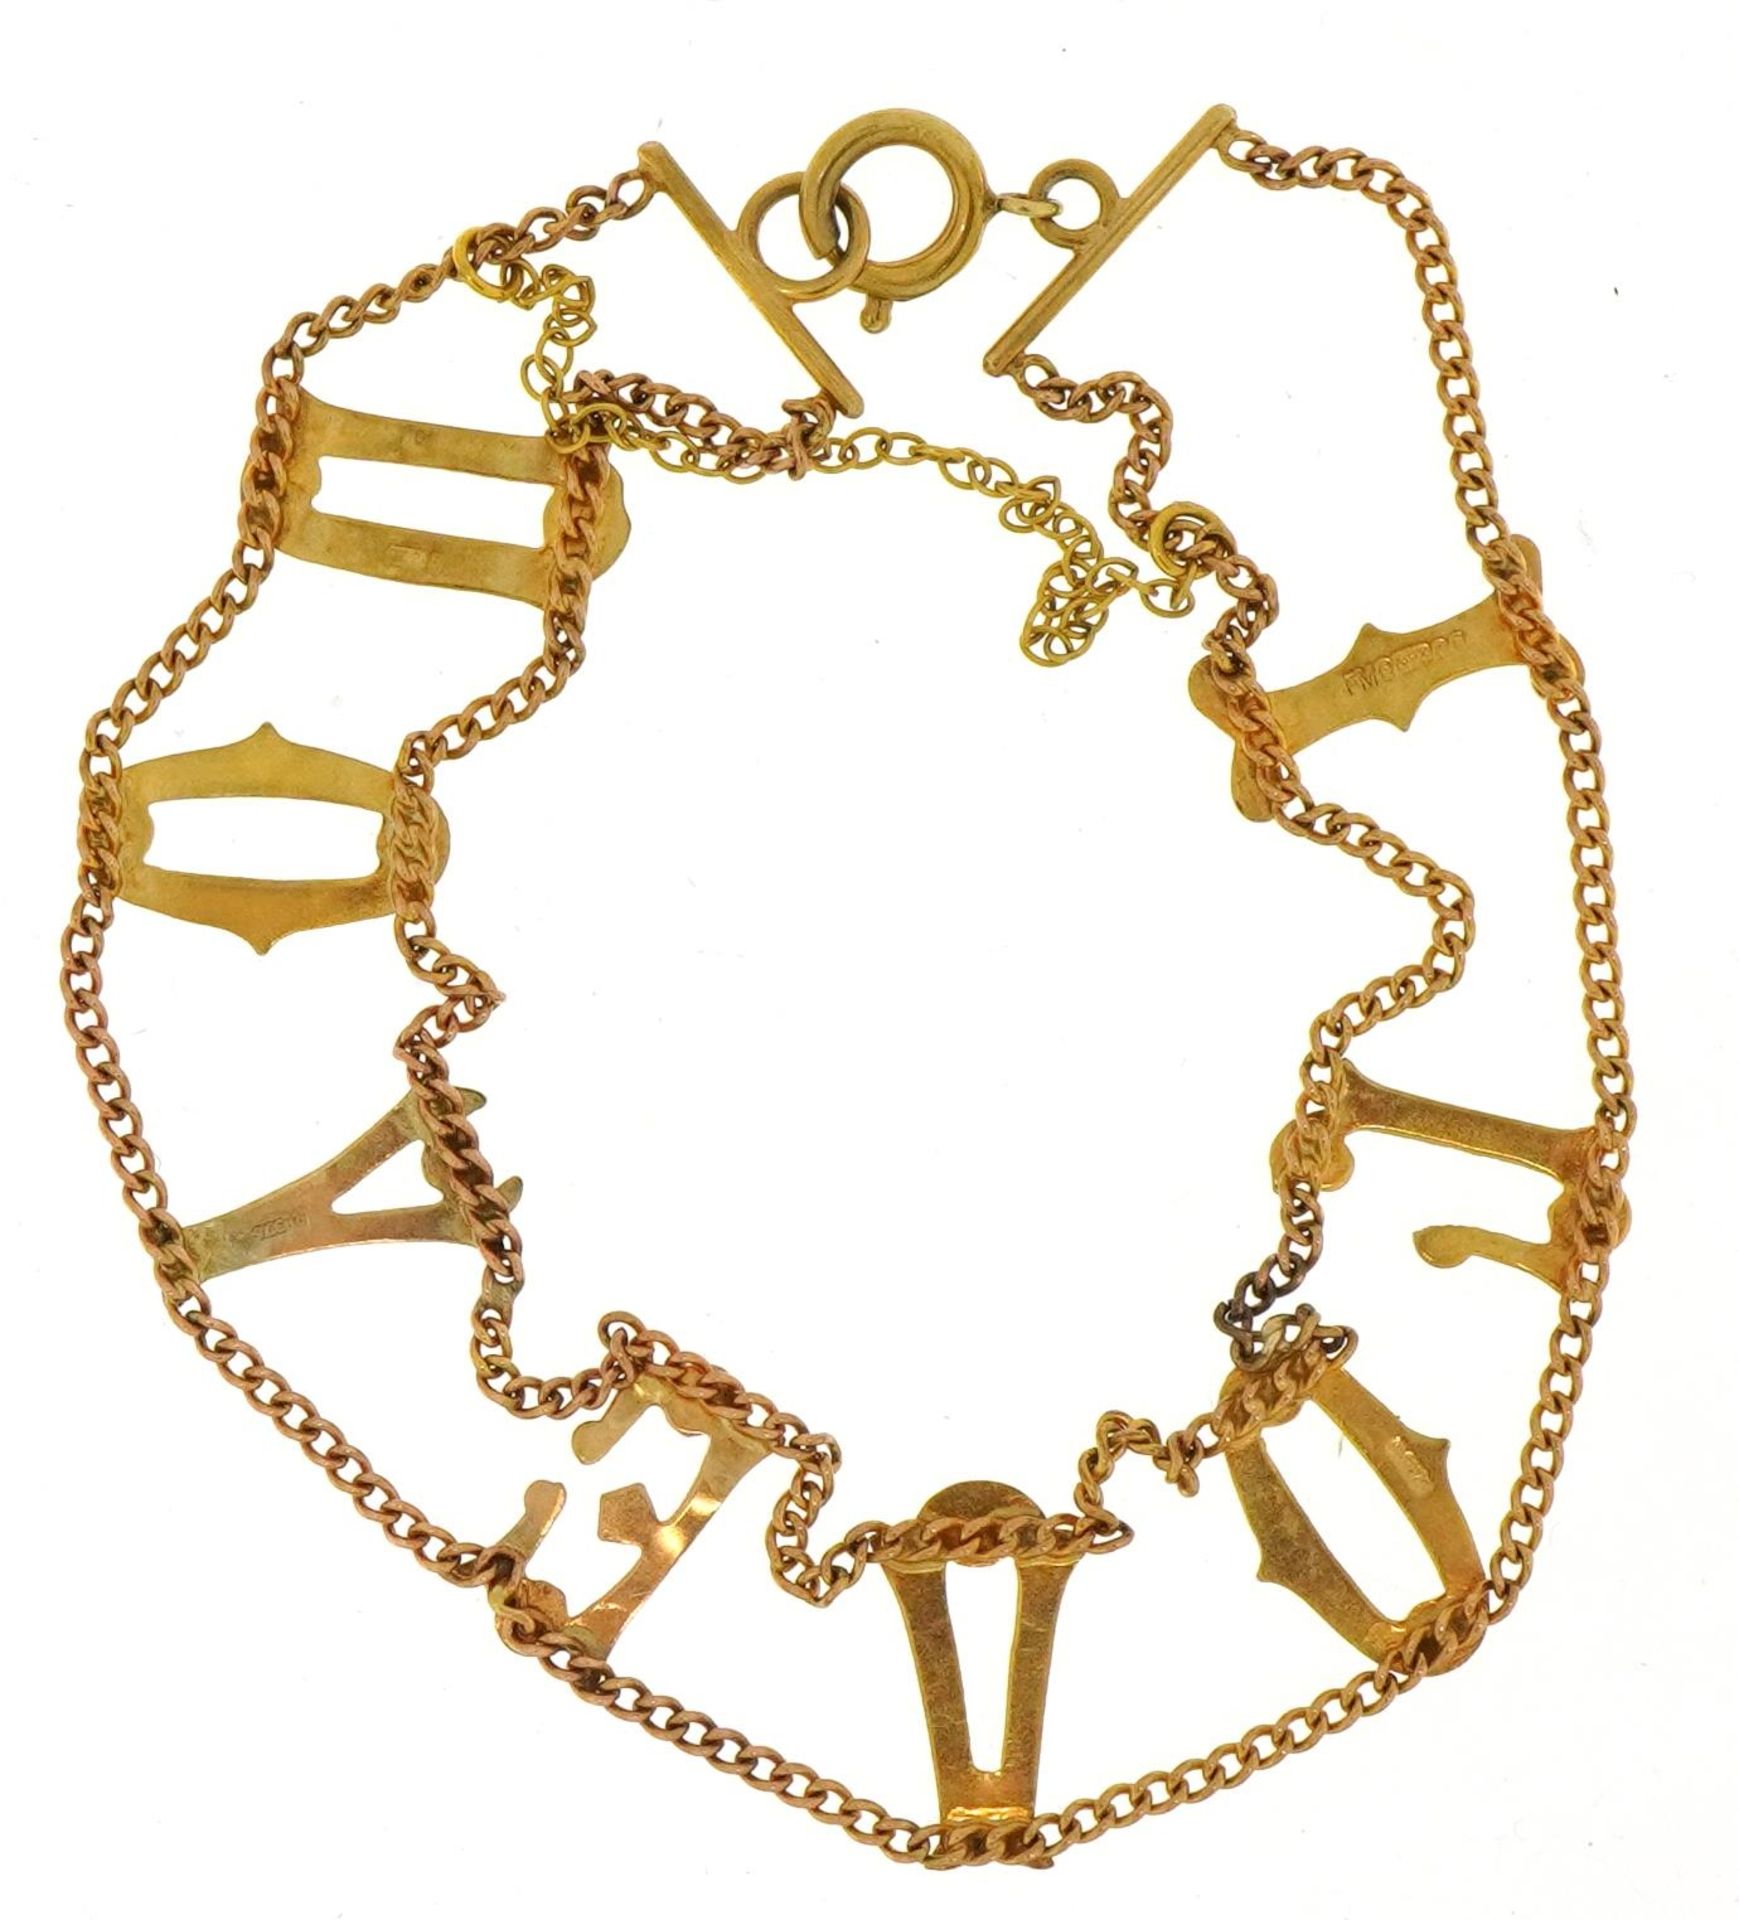 9ct gold I love you design bracelet, 18cm in length, 4.8g - Image 3 of 4